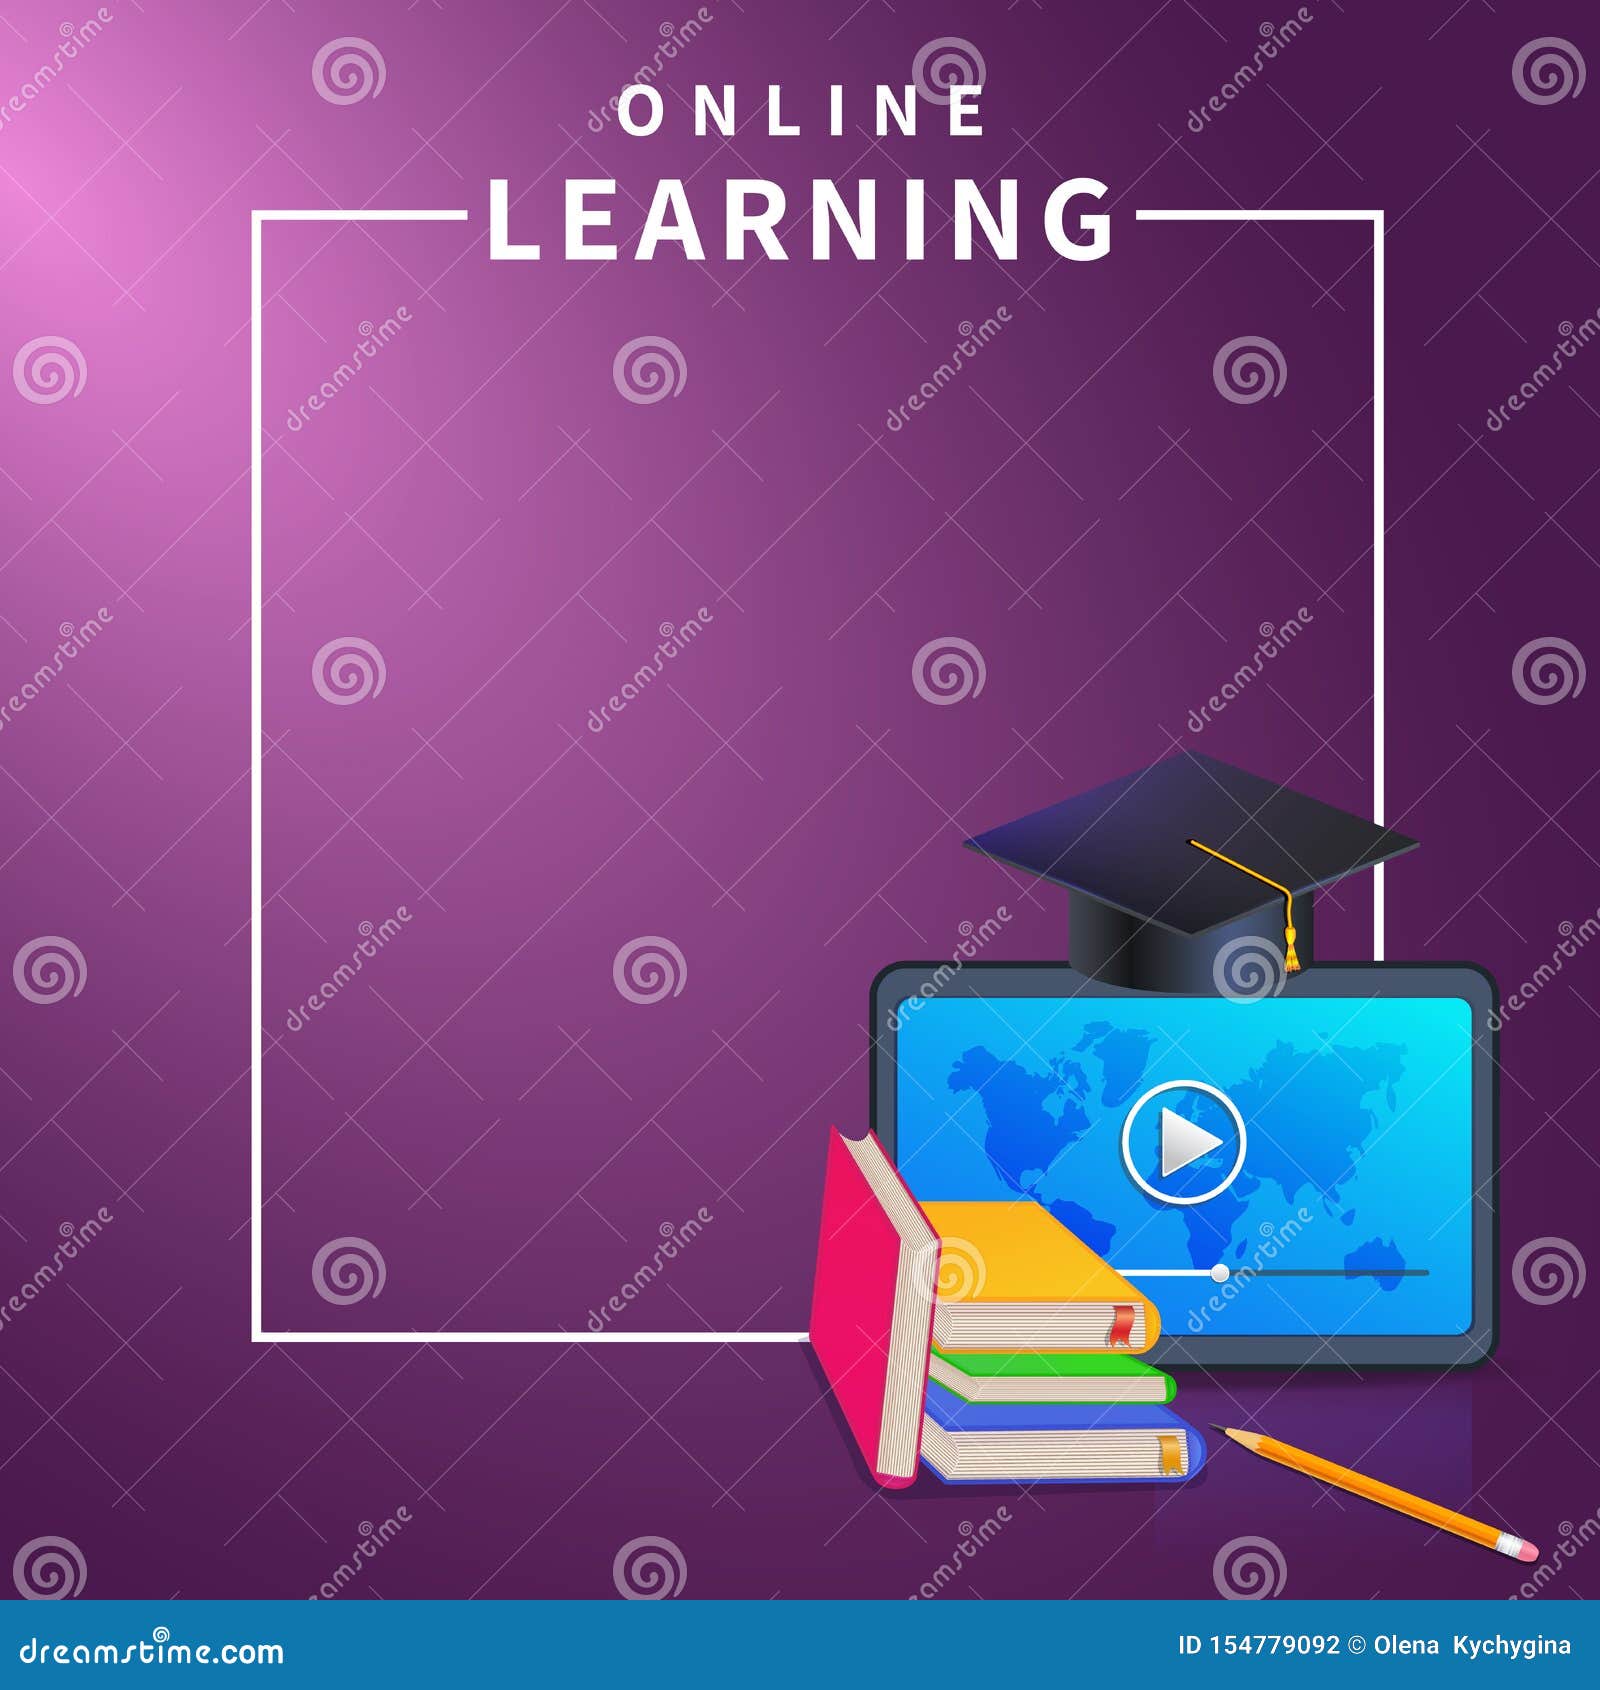 Bạn muốn tìm kiếm một banner giáo dục trực tuyến đầy màu sắc và cuốn hút? Hãy tham khảo banner giáo dục trực tuyến trên nền tím này. Banner này sẽ giúp bạn hiểu rõ hơn về những chương trình đào tạo trực tuyến hoặc e-learning mà bạn đang tìm kiếm.